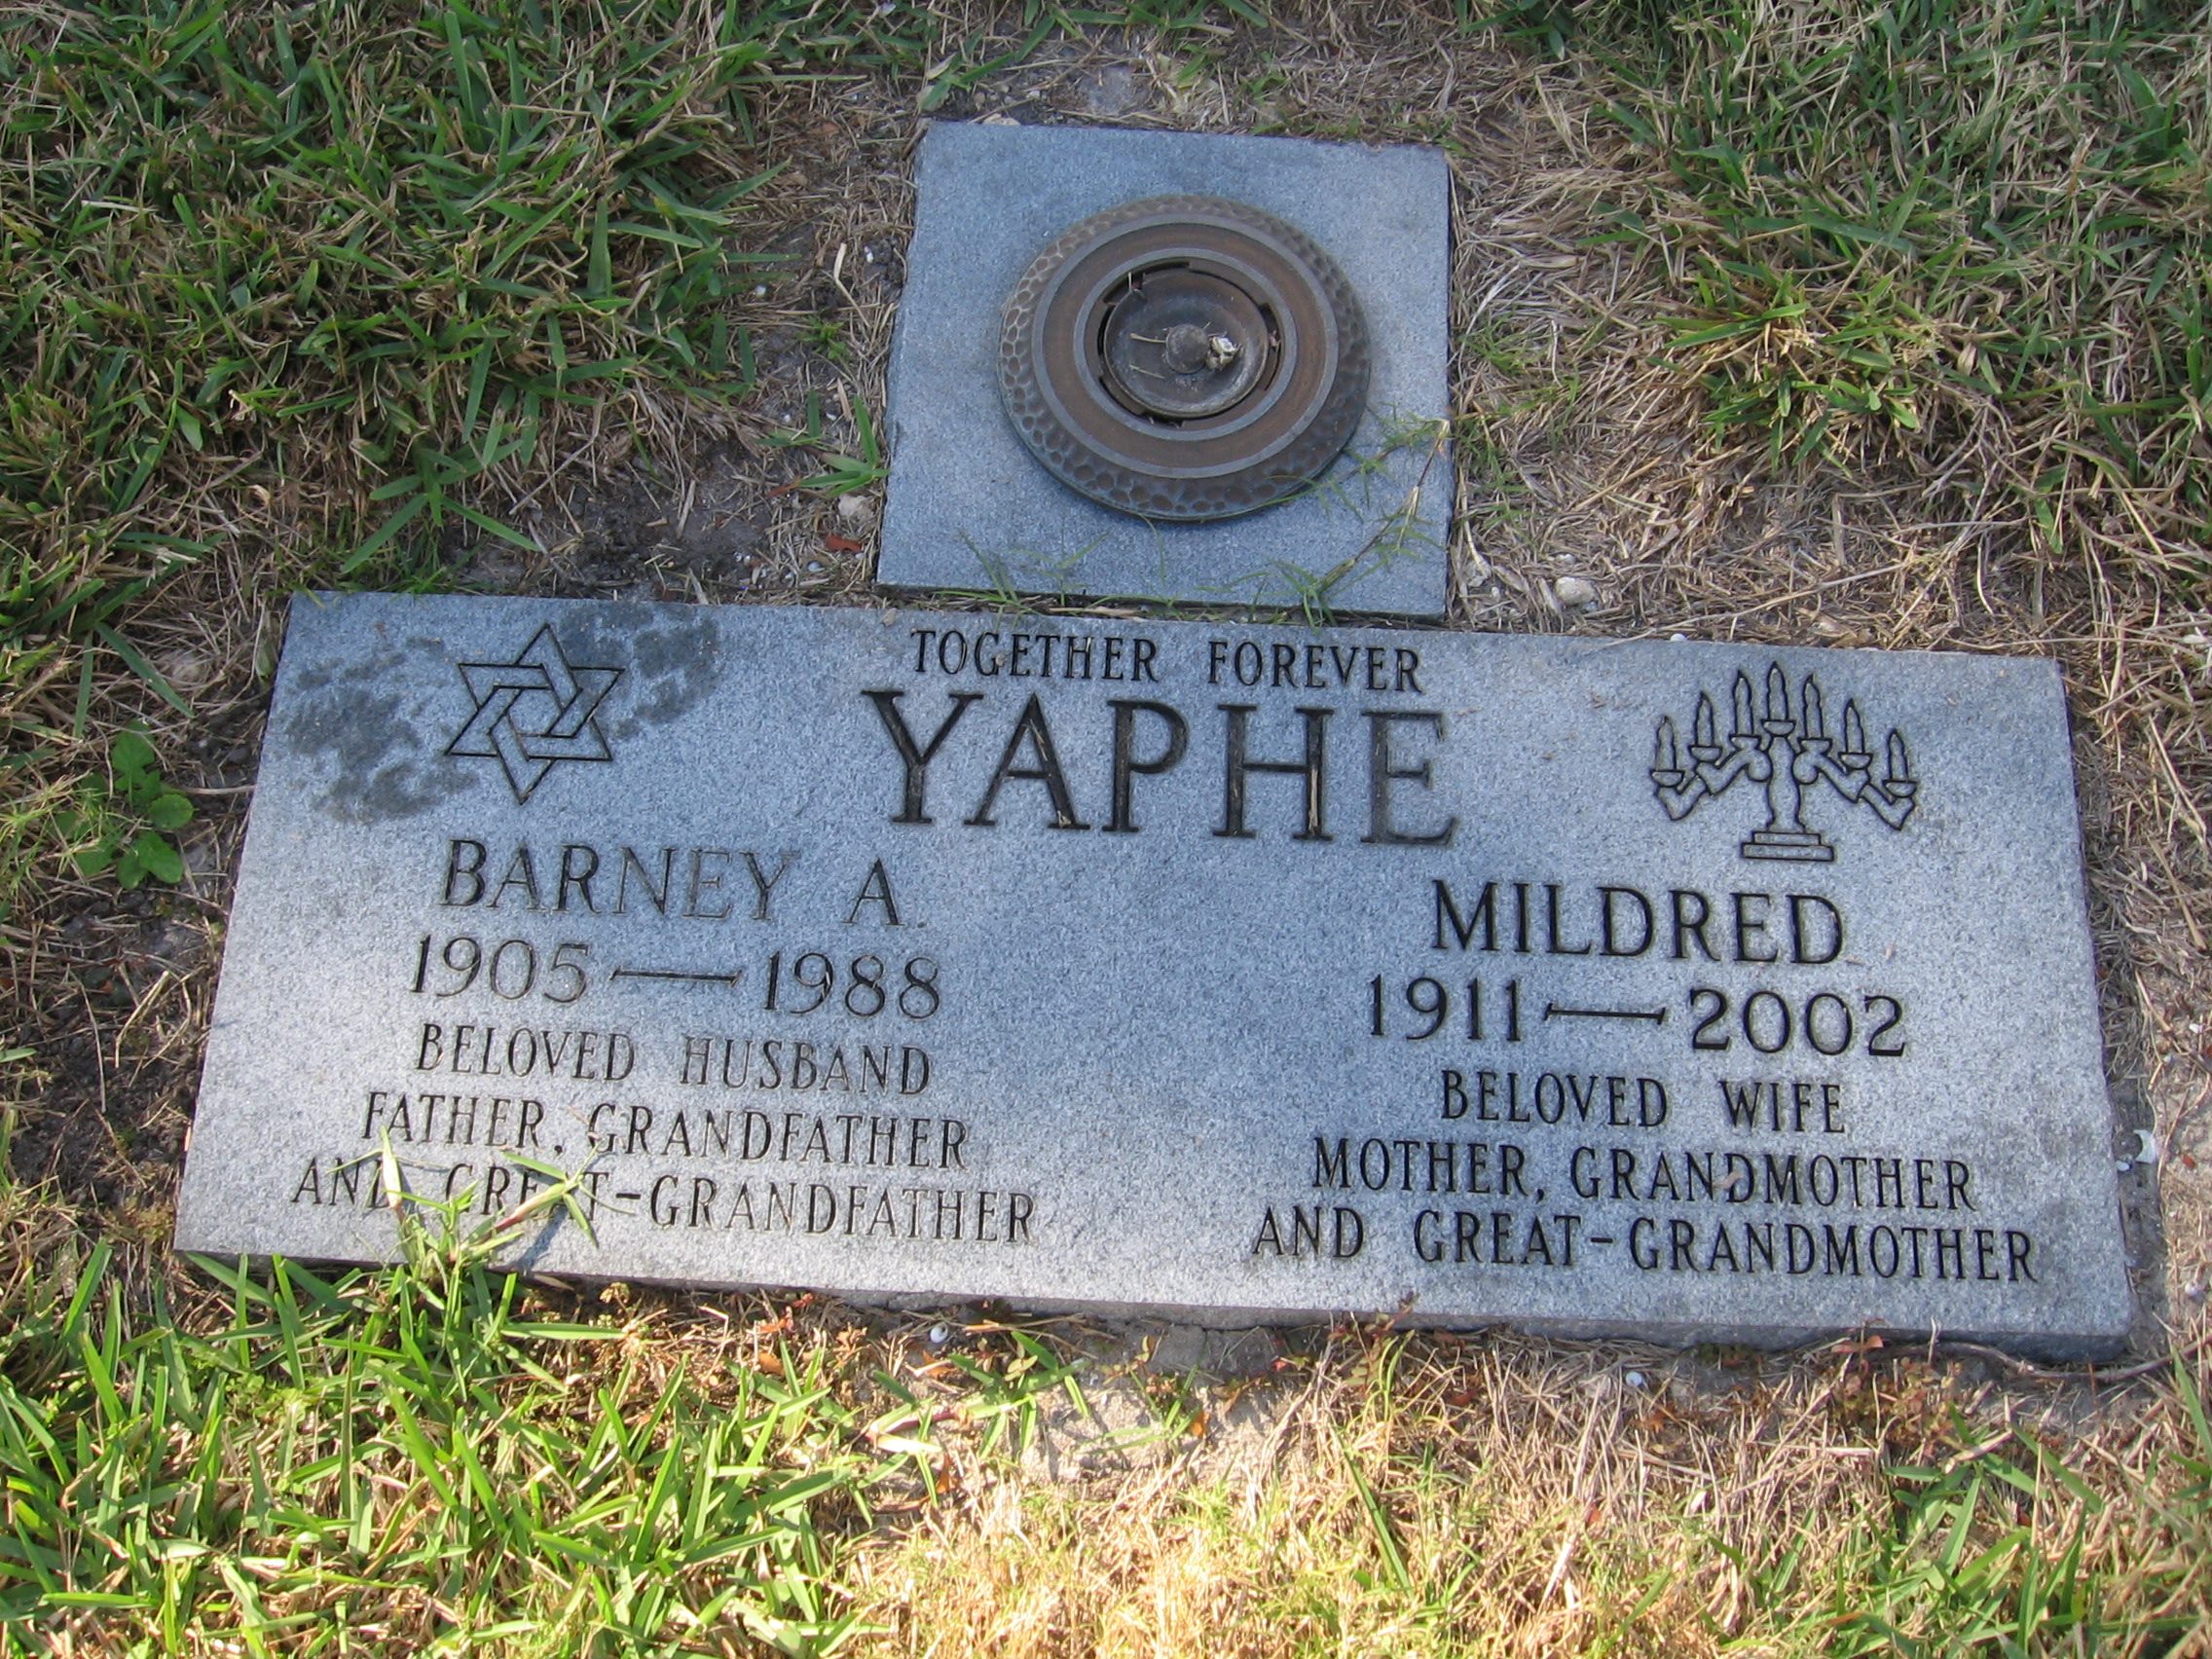 Mildred Yaphe